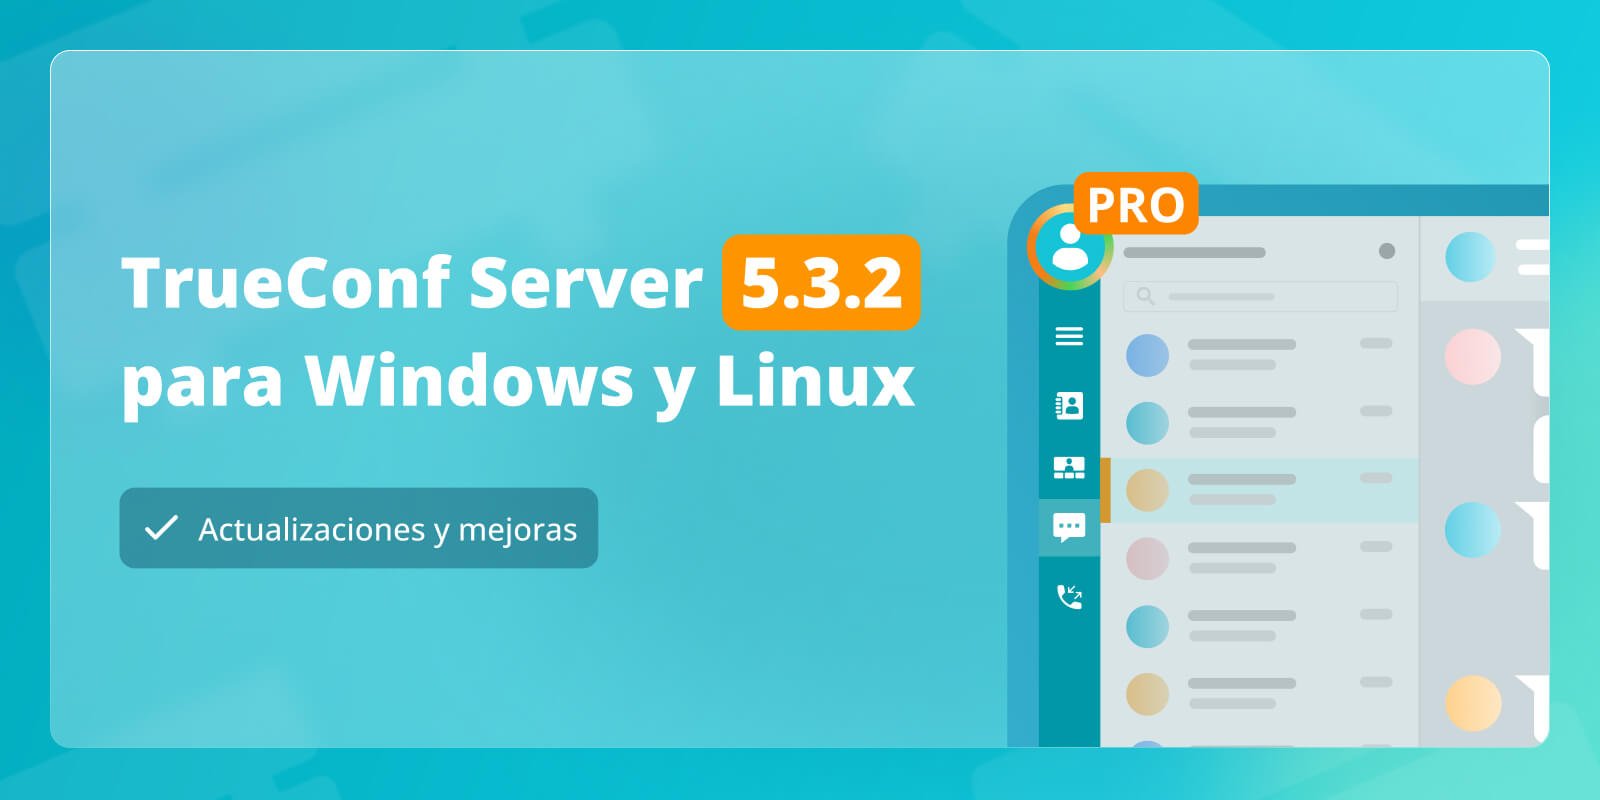 TrueConf Server 5.3.2: Actualizaciones y mejoras 7